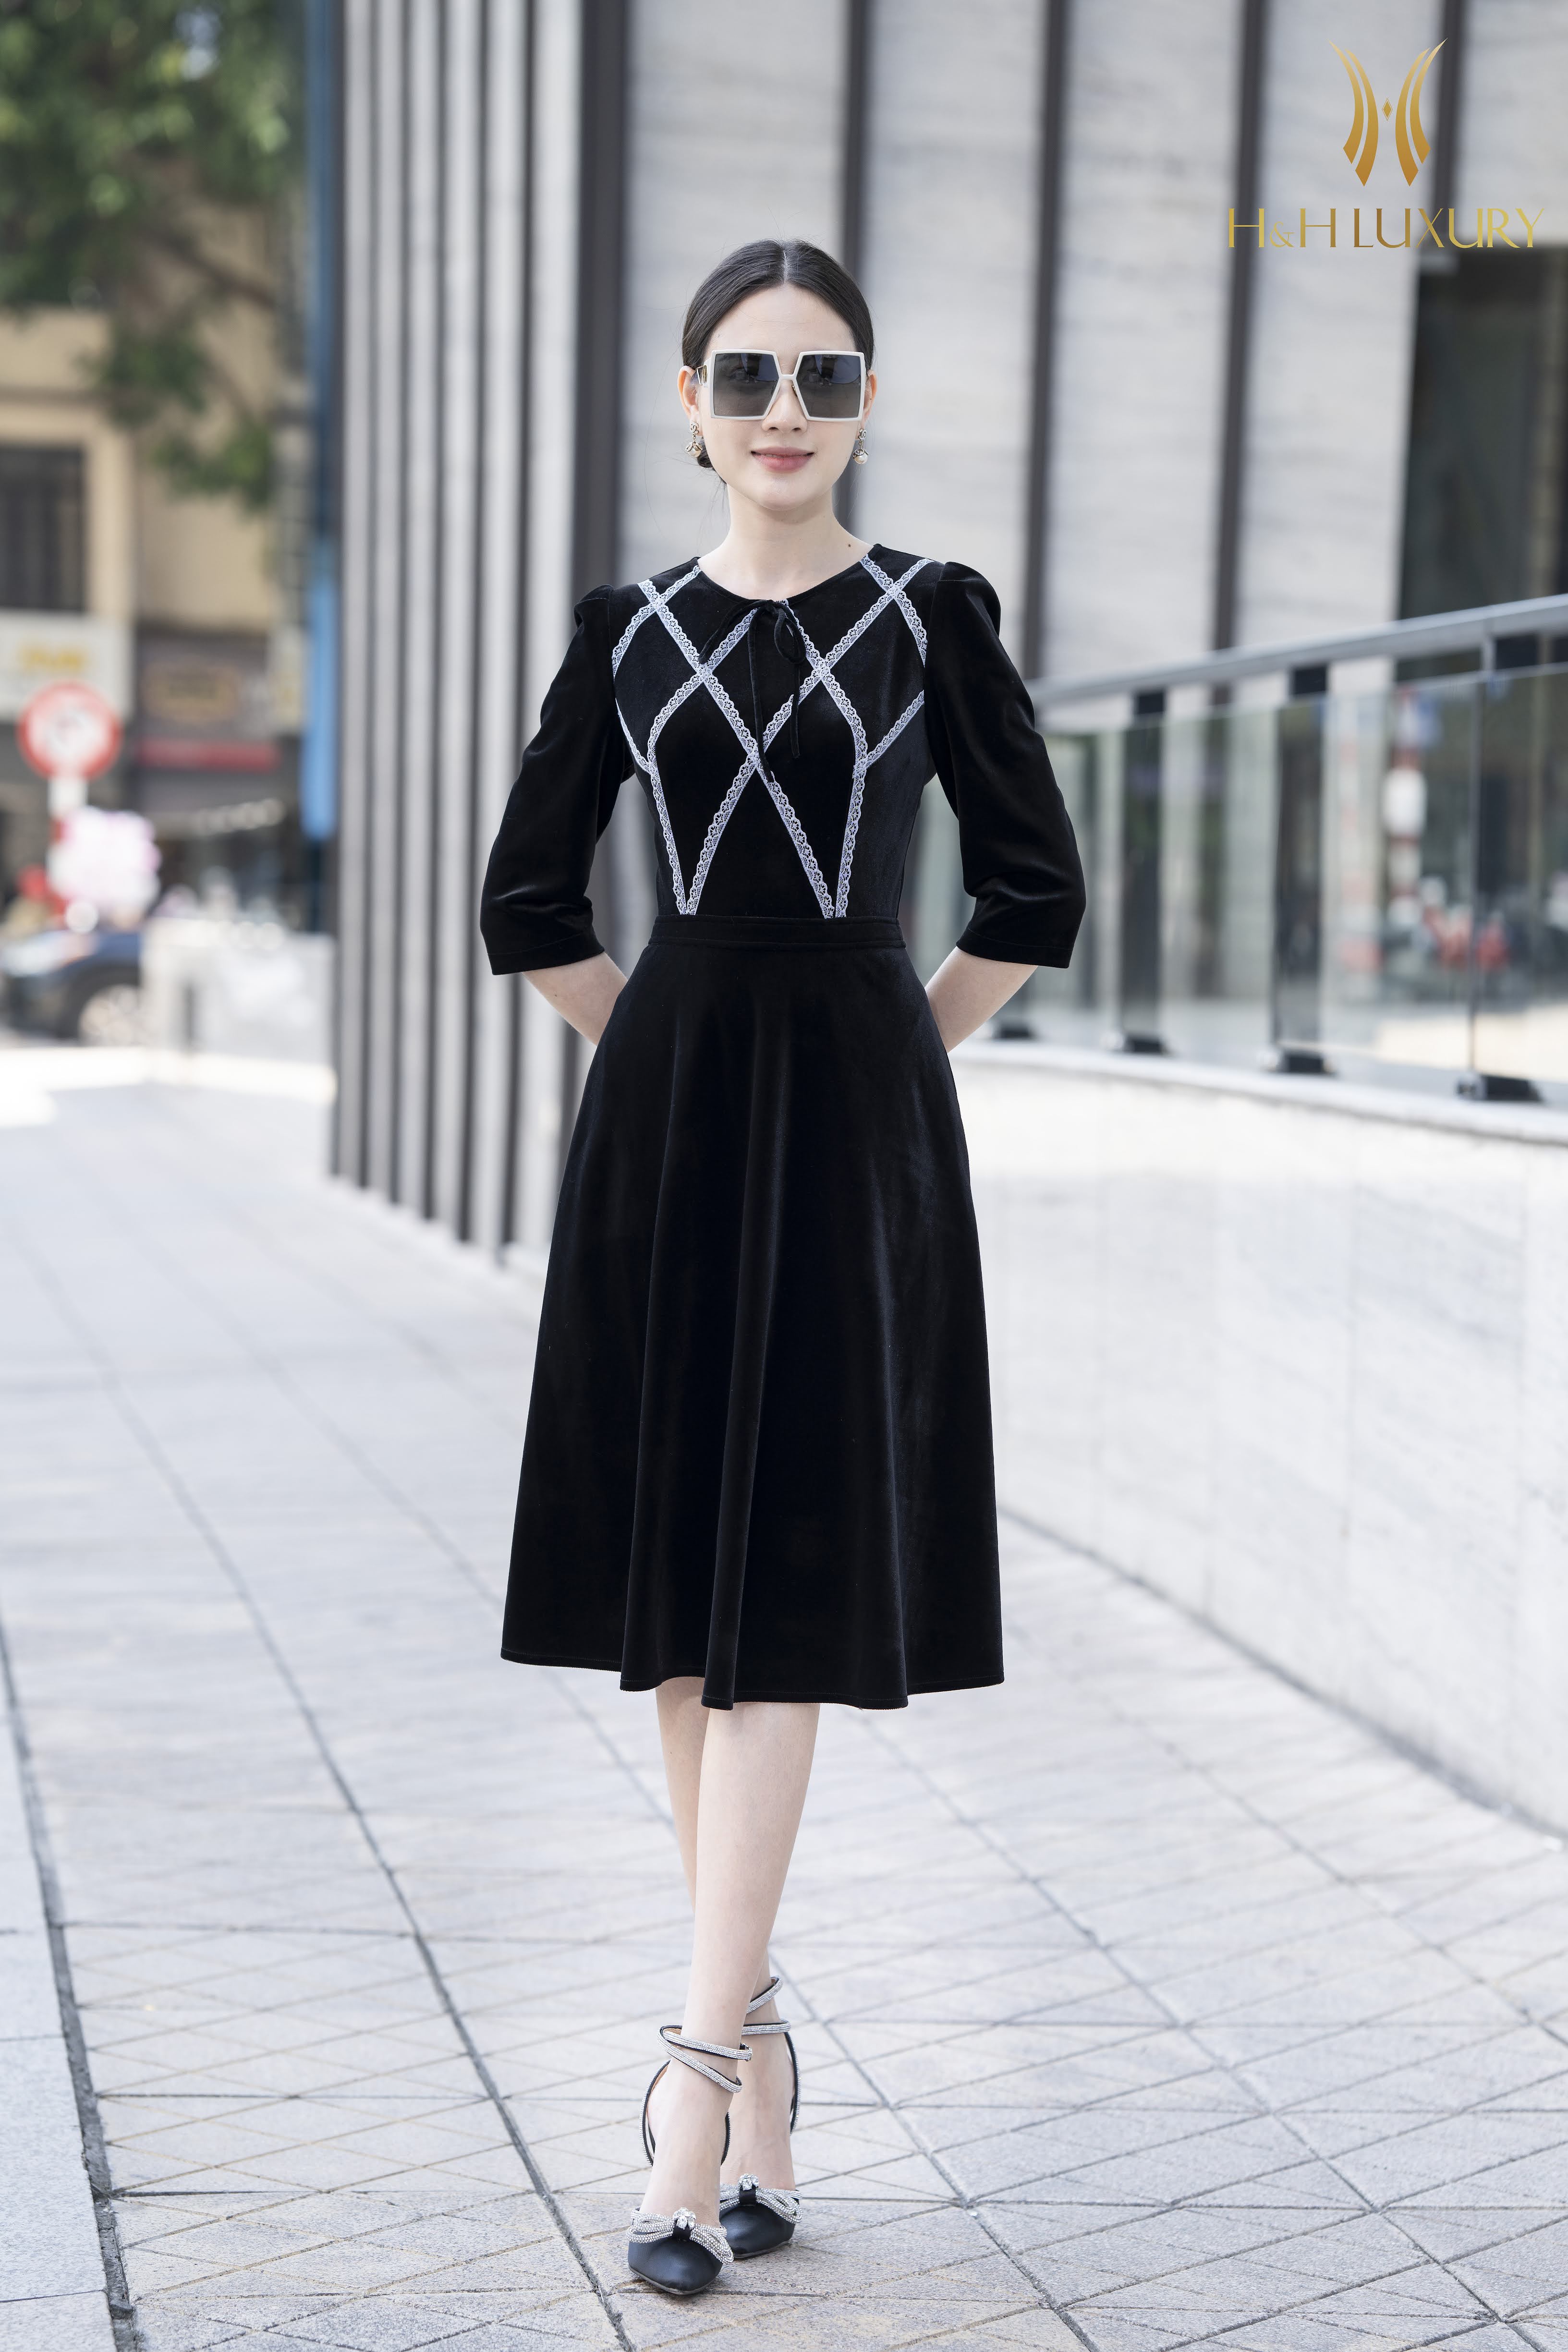 Bán sỉ váy nhung xòe 2 màu đen đô cho nữ n | Shopee Việt Nam